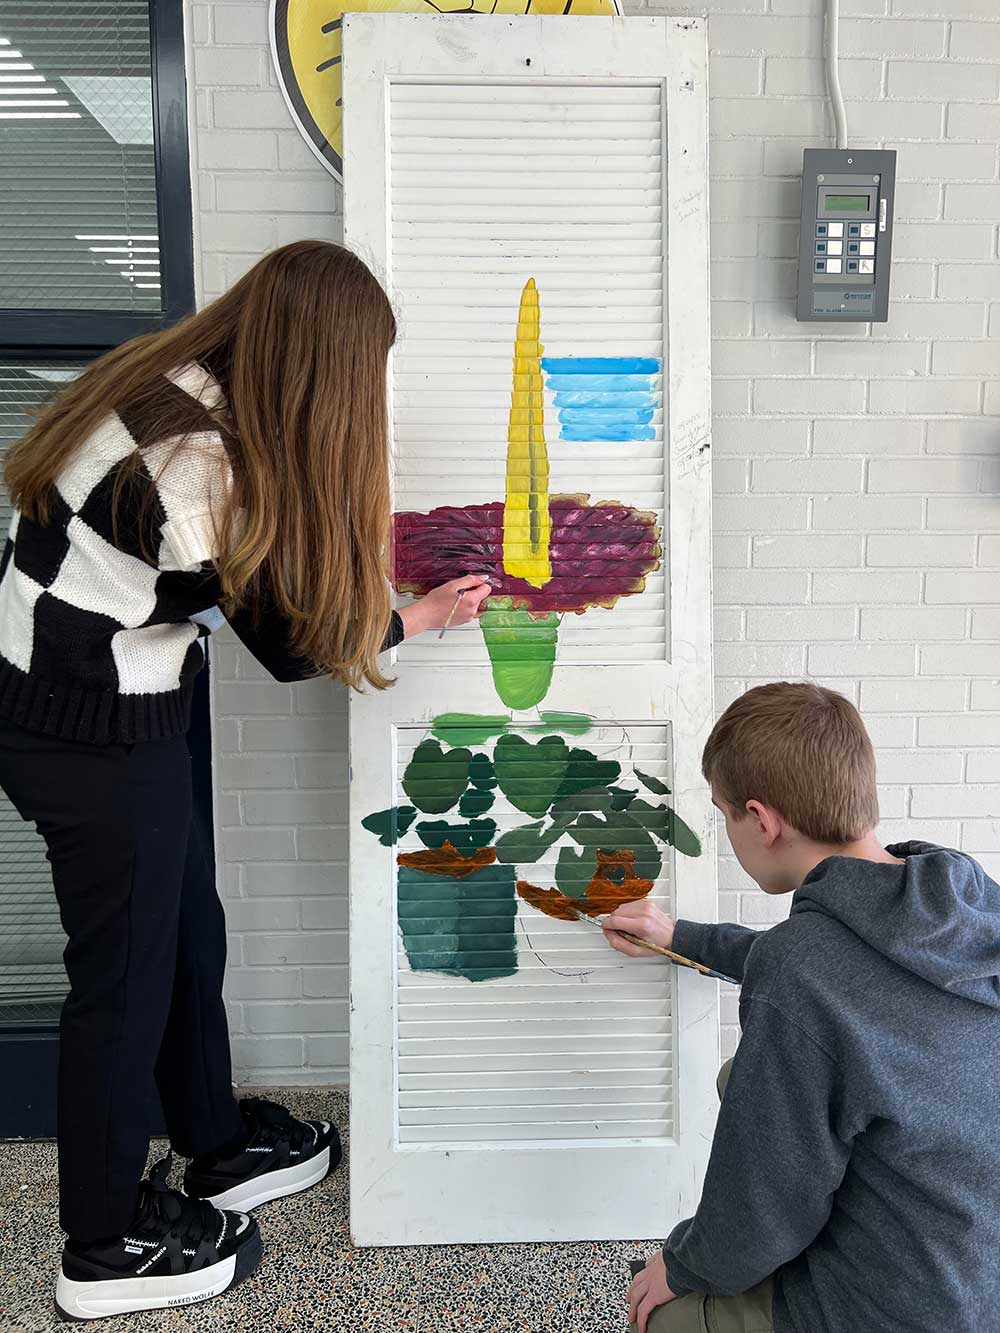 Art Students painting a door for “Opening Doorways to Spring” Exhibit